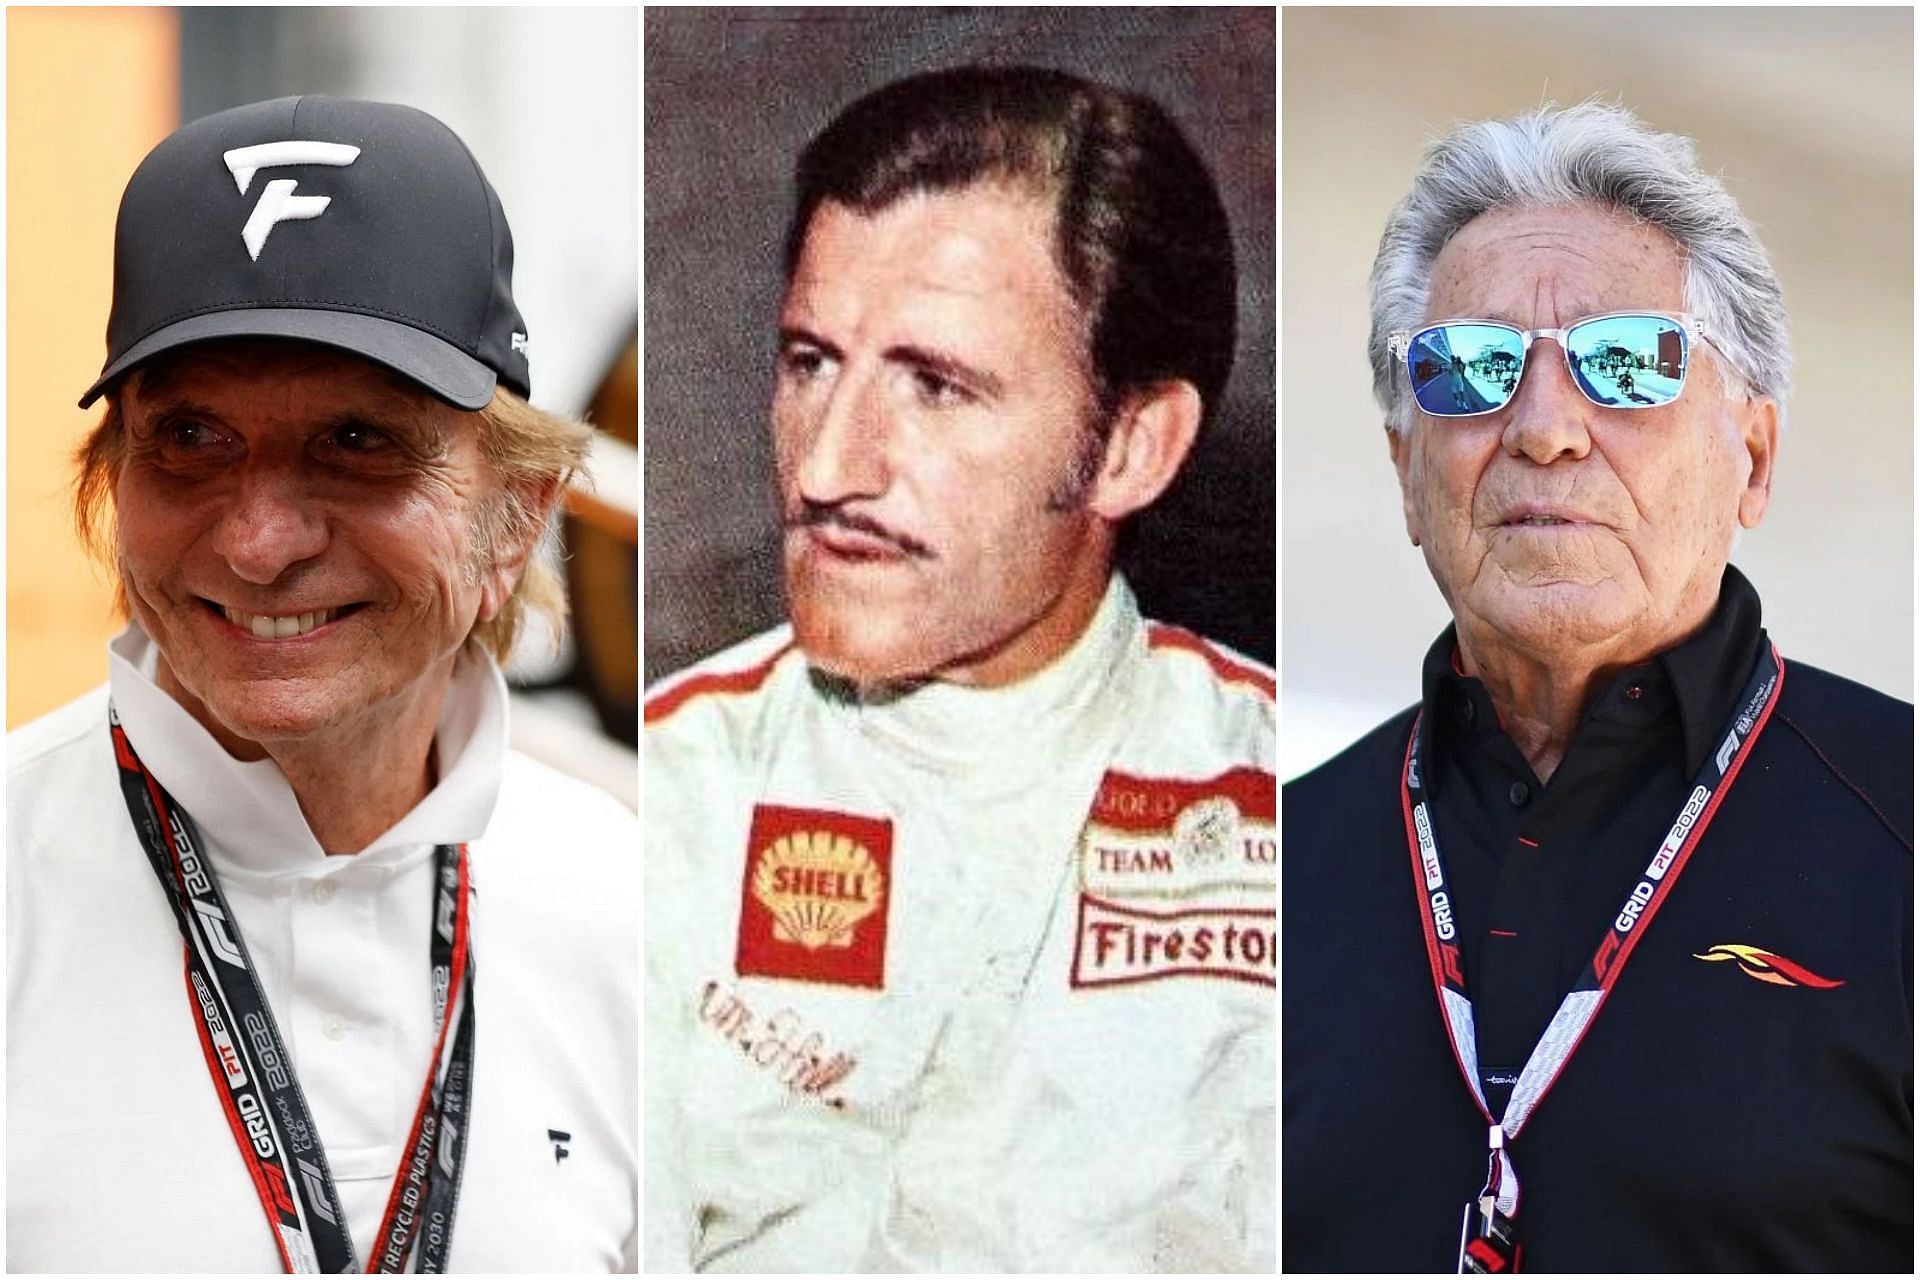 Emerson Fittipaldi (L), Graham Hill (C), and Mario Andretti (R) (Collage via Sportskeeda)